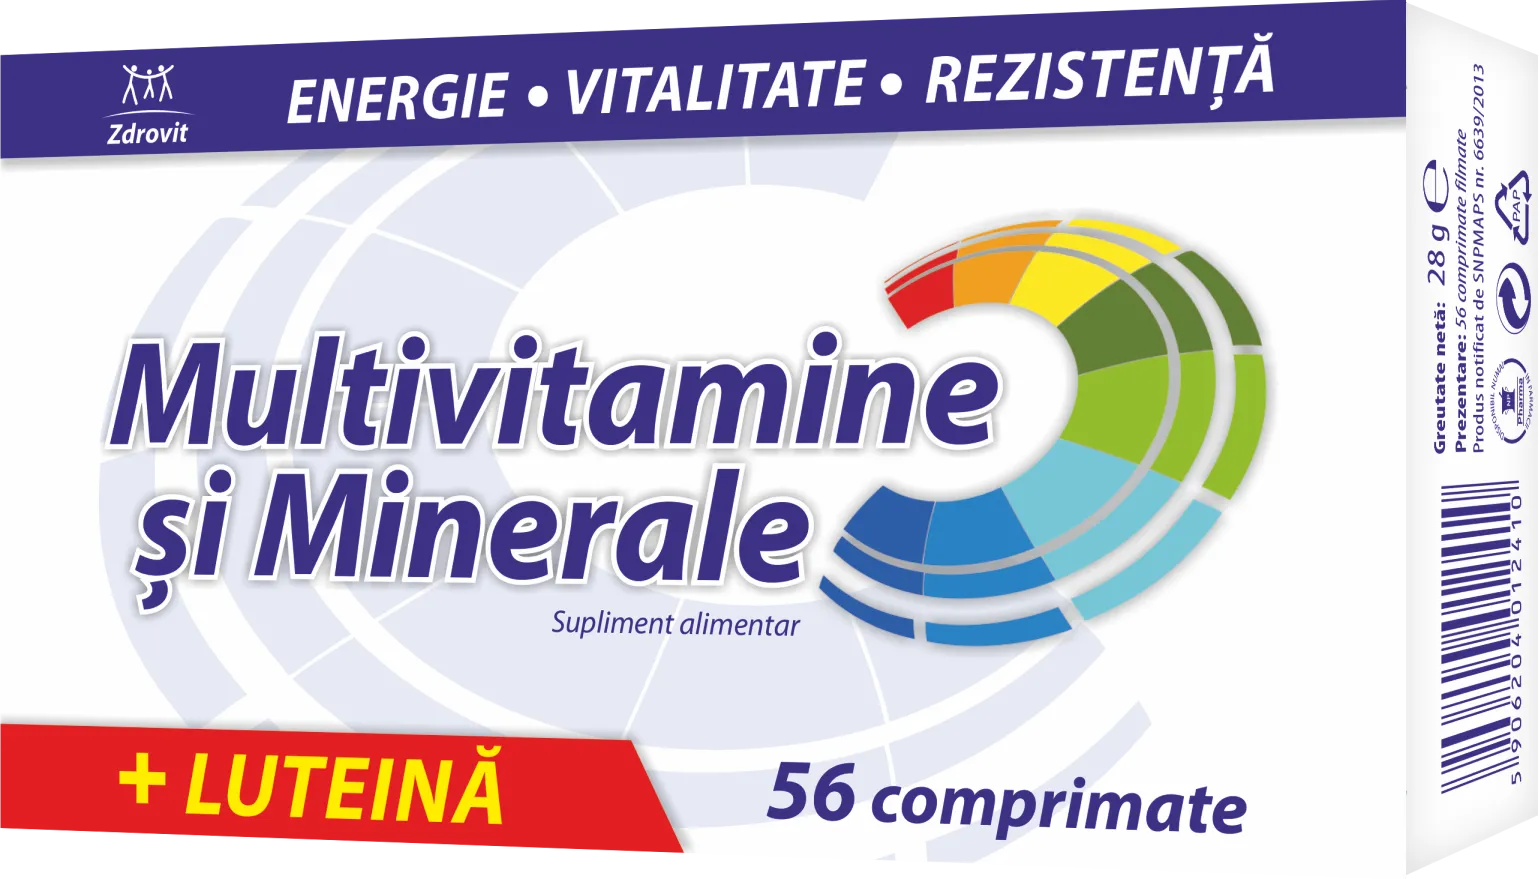 Multivitamine + Minerale + Luteina x 56 comprimate (Zdrovit)